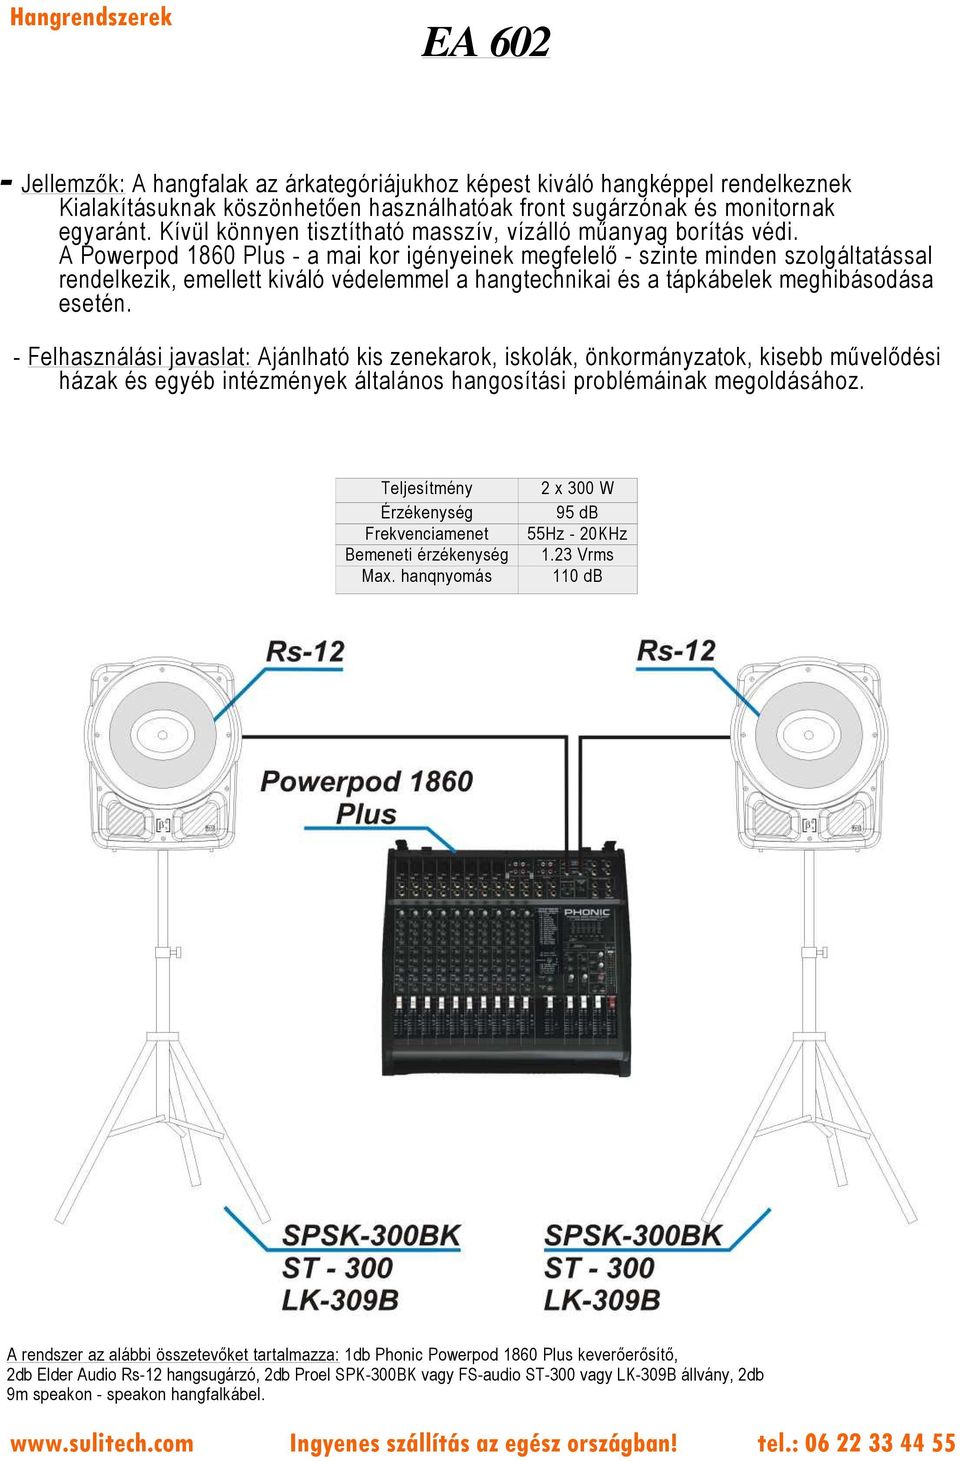 A Powerpod 1860 Plus - a mai kor igényeinek megfelelő - szinte minden szolgáltatással rendelkezik, emellett kiváló védelemmel a hangtechnikai és a tápkábelek meghibásodása esetén.